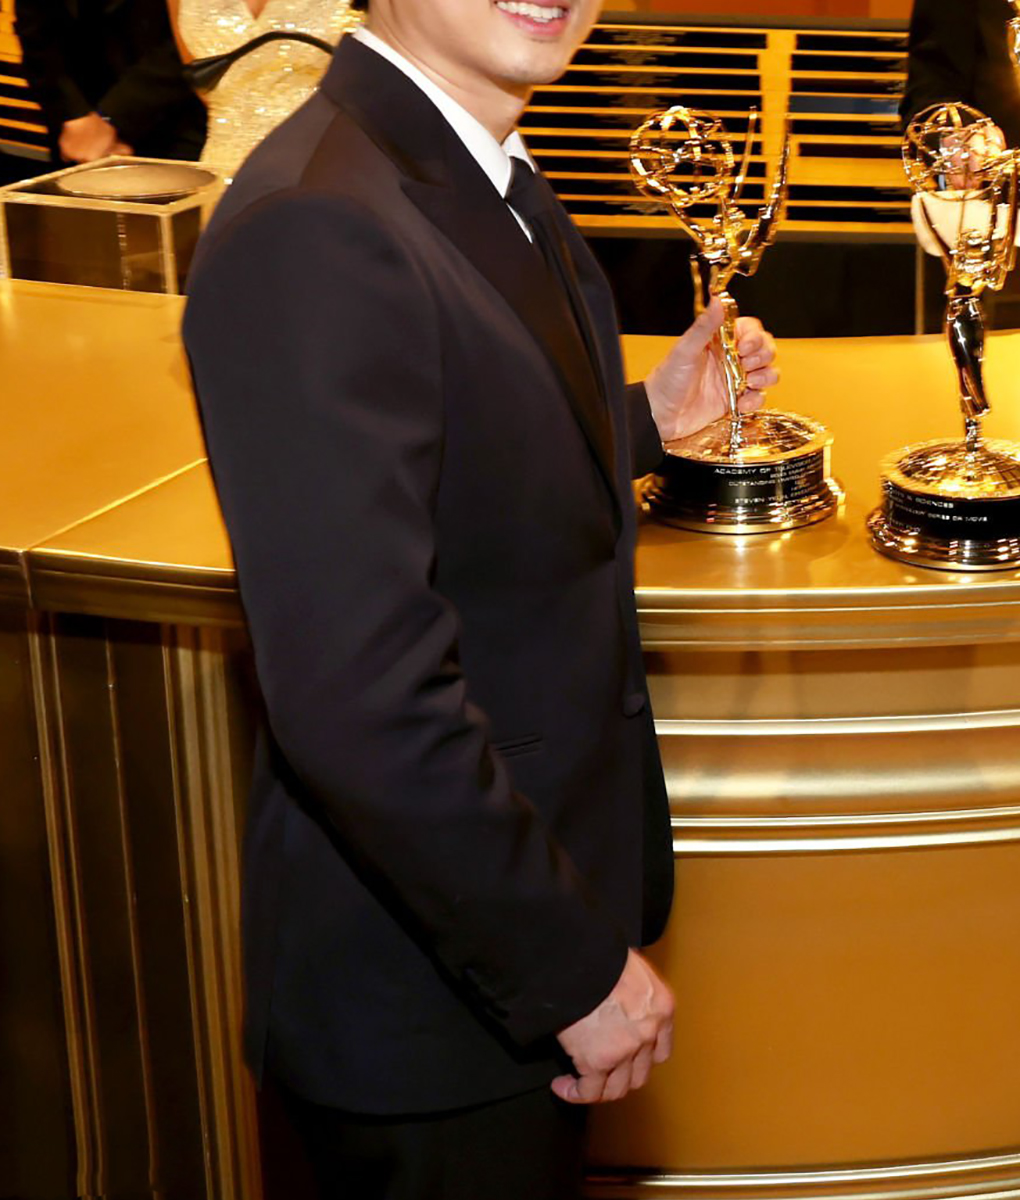 Steven Yeun 75 Emmys Awards Suit (1)